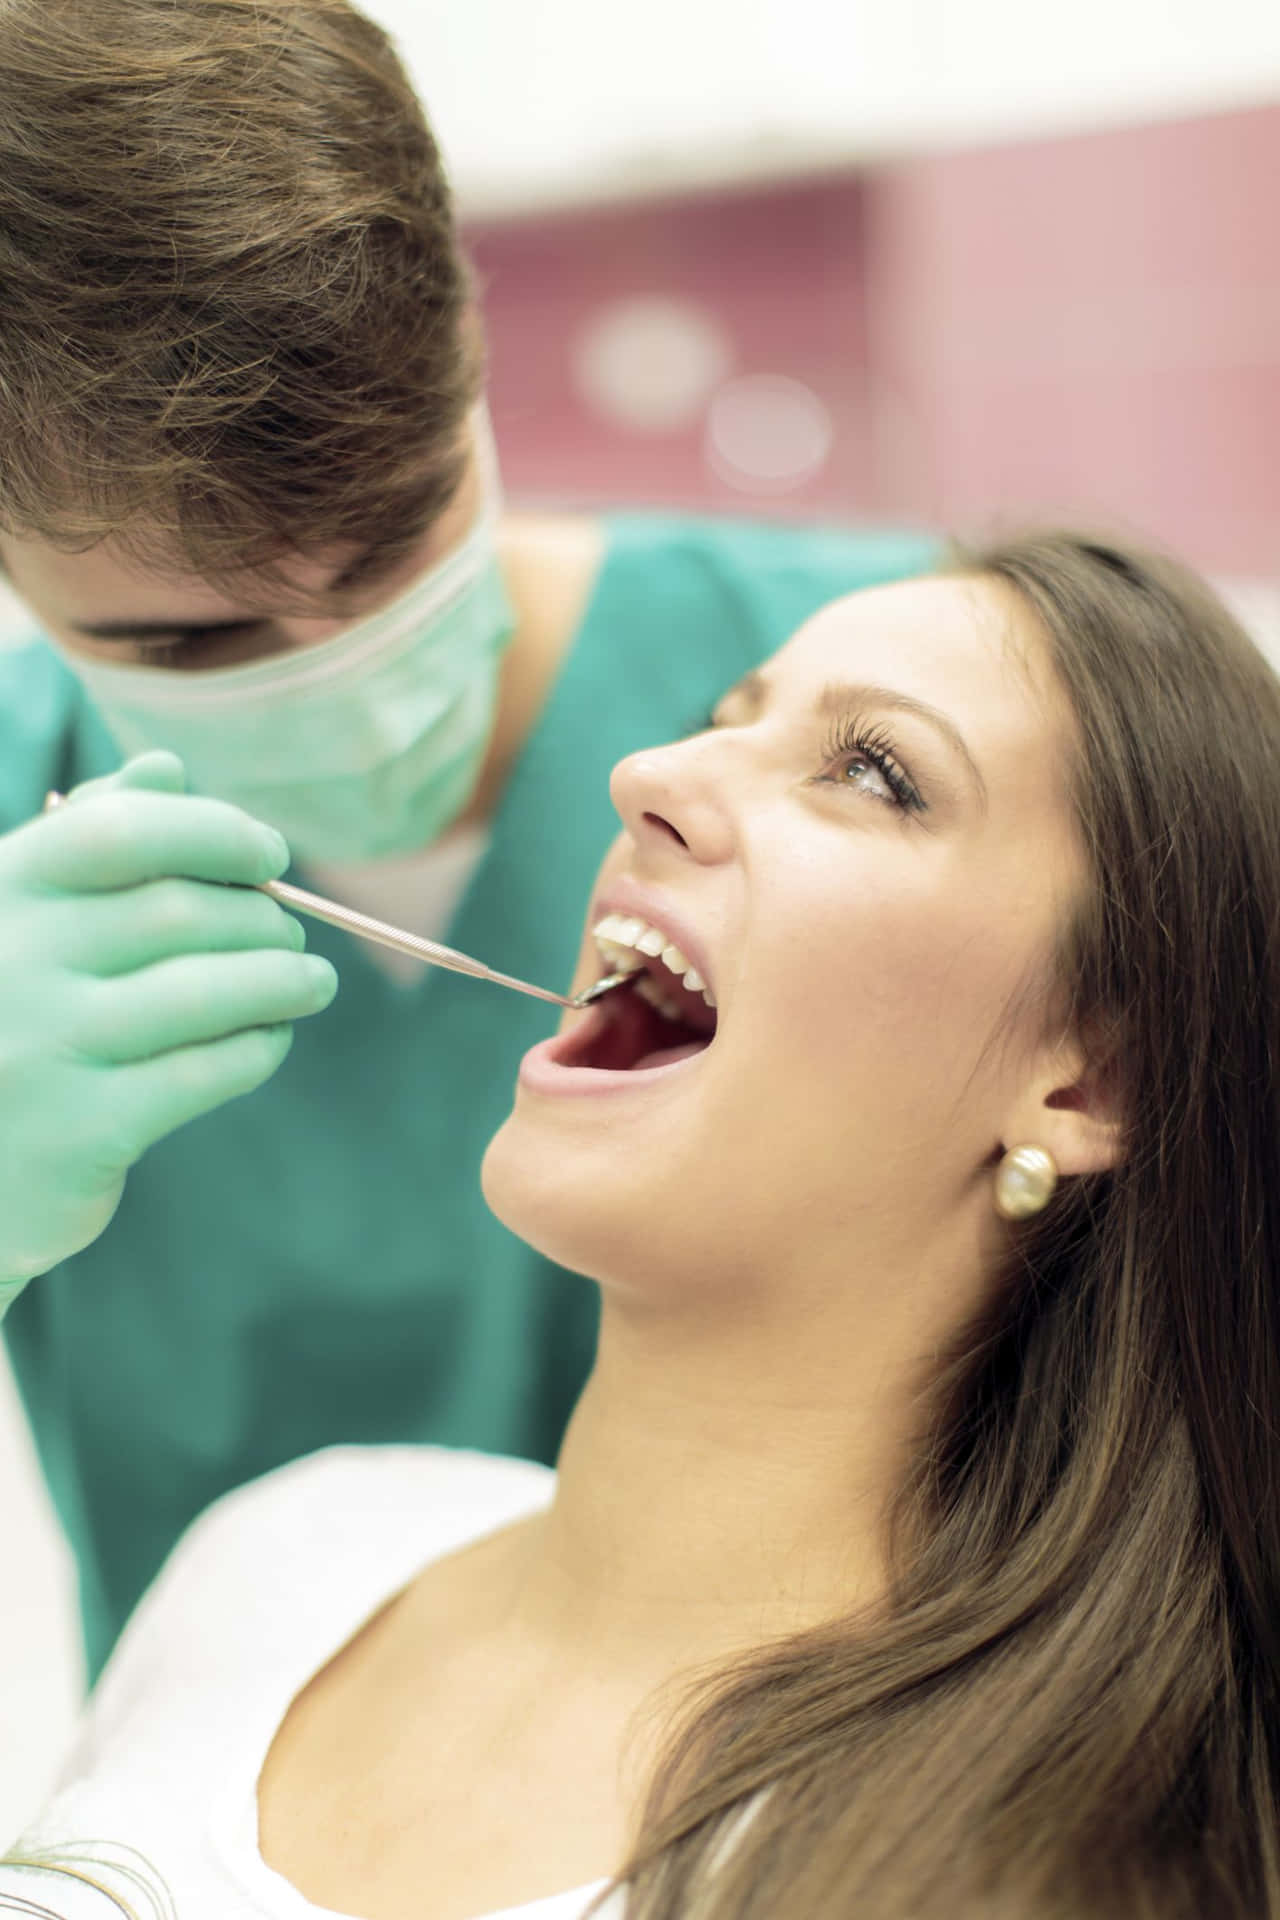 Dentistache Esamina Il Paziente Con Strumenti Dentali, O Dentista Che Visita Il Paziente Con Attrezzi Dentali.